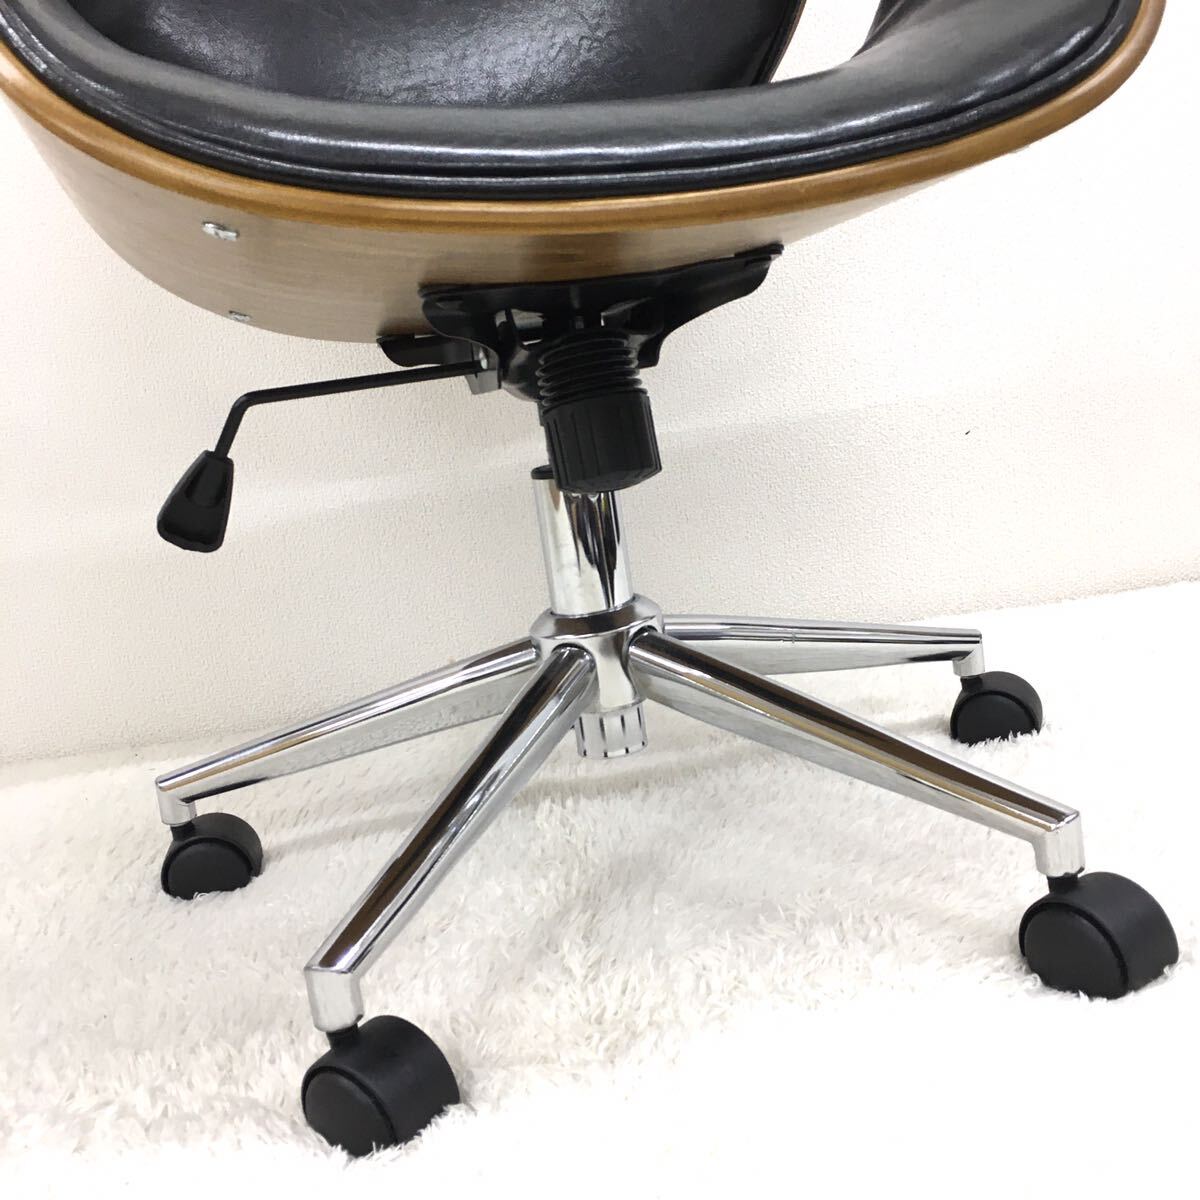 KNOX ノースチェア レトロ オフィスチェア 革張り 合成皮革 モダン木目曲線 書斎椅子 人間工学 ガス厚式昇降機能 ブラック